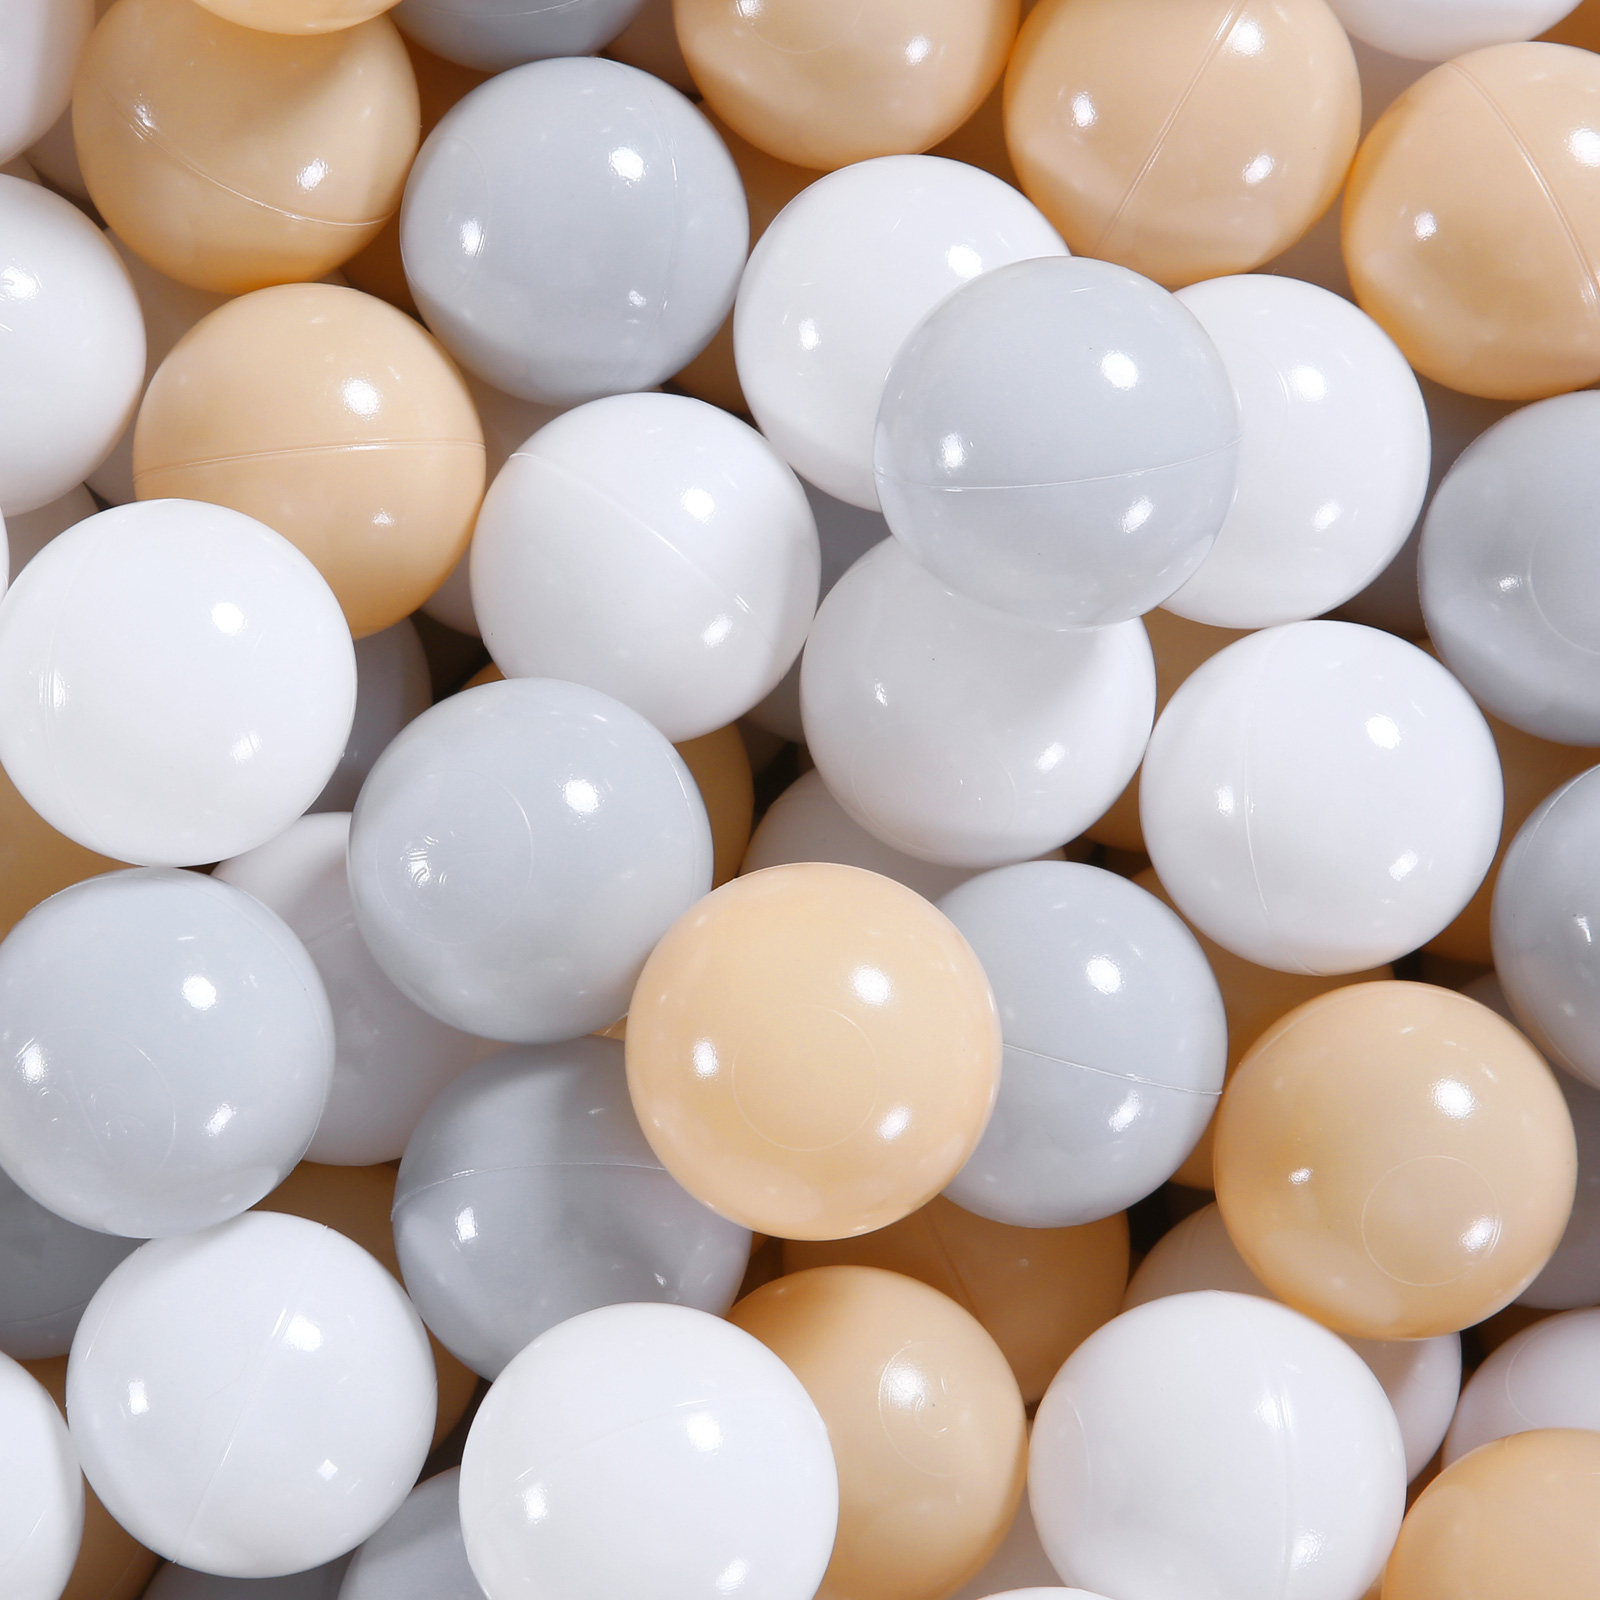 Boules de piscine à balles beiges, blanches et grises